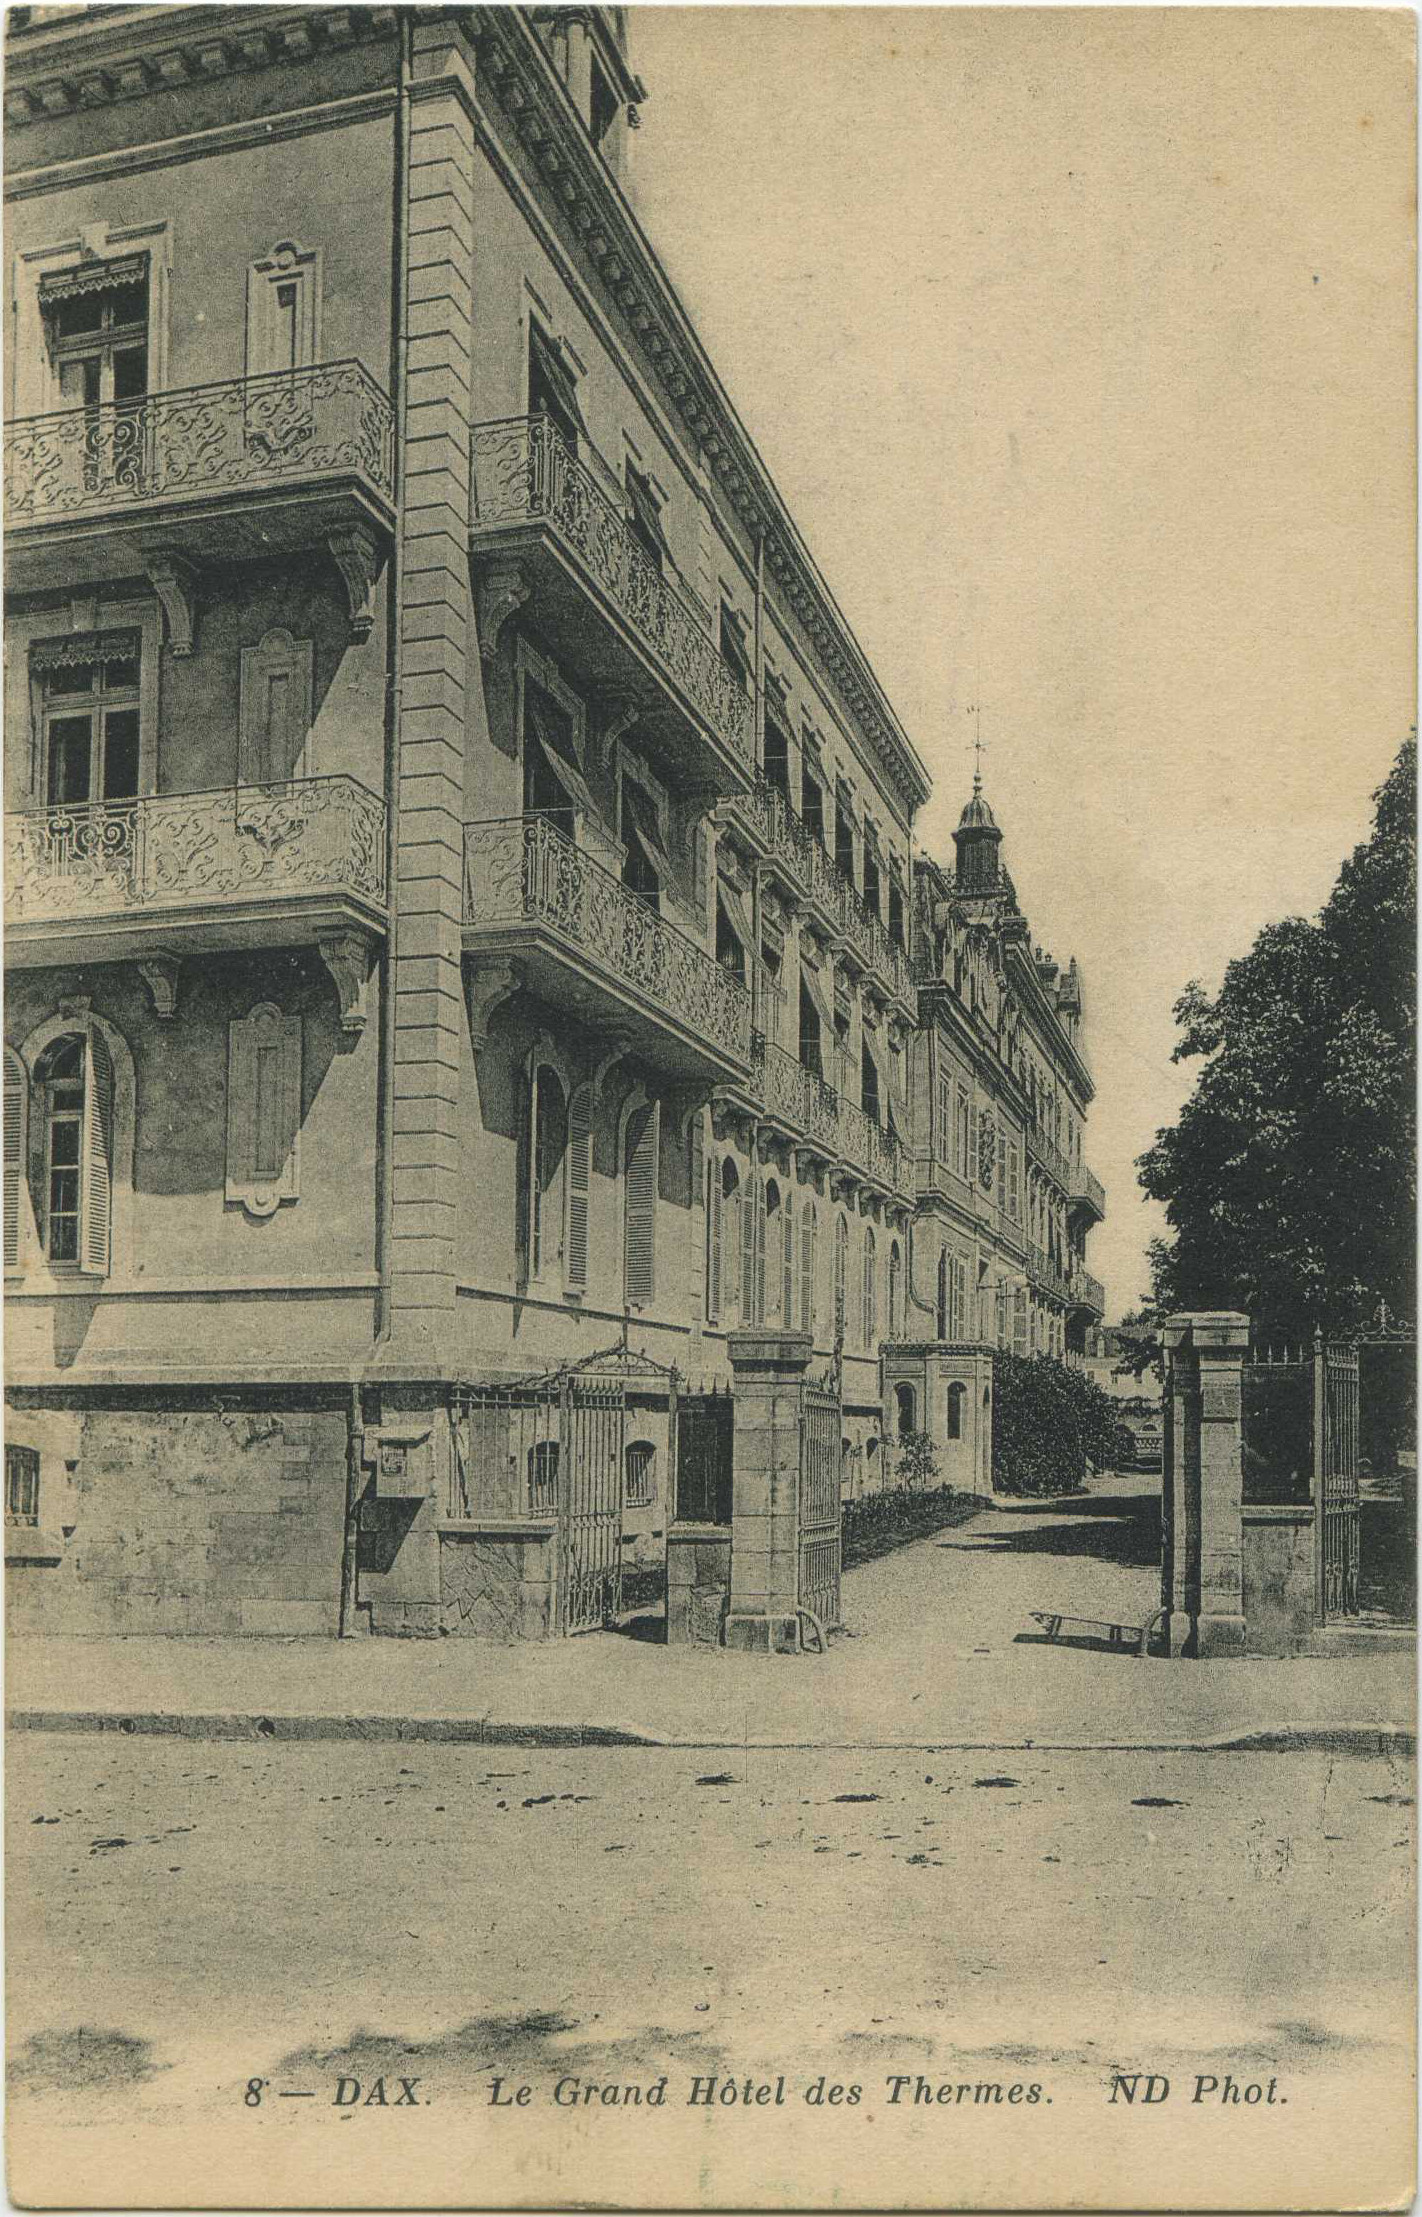 Dax - Le Grand Hôtel des Thermes.